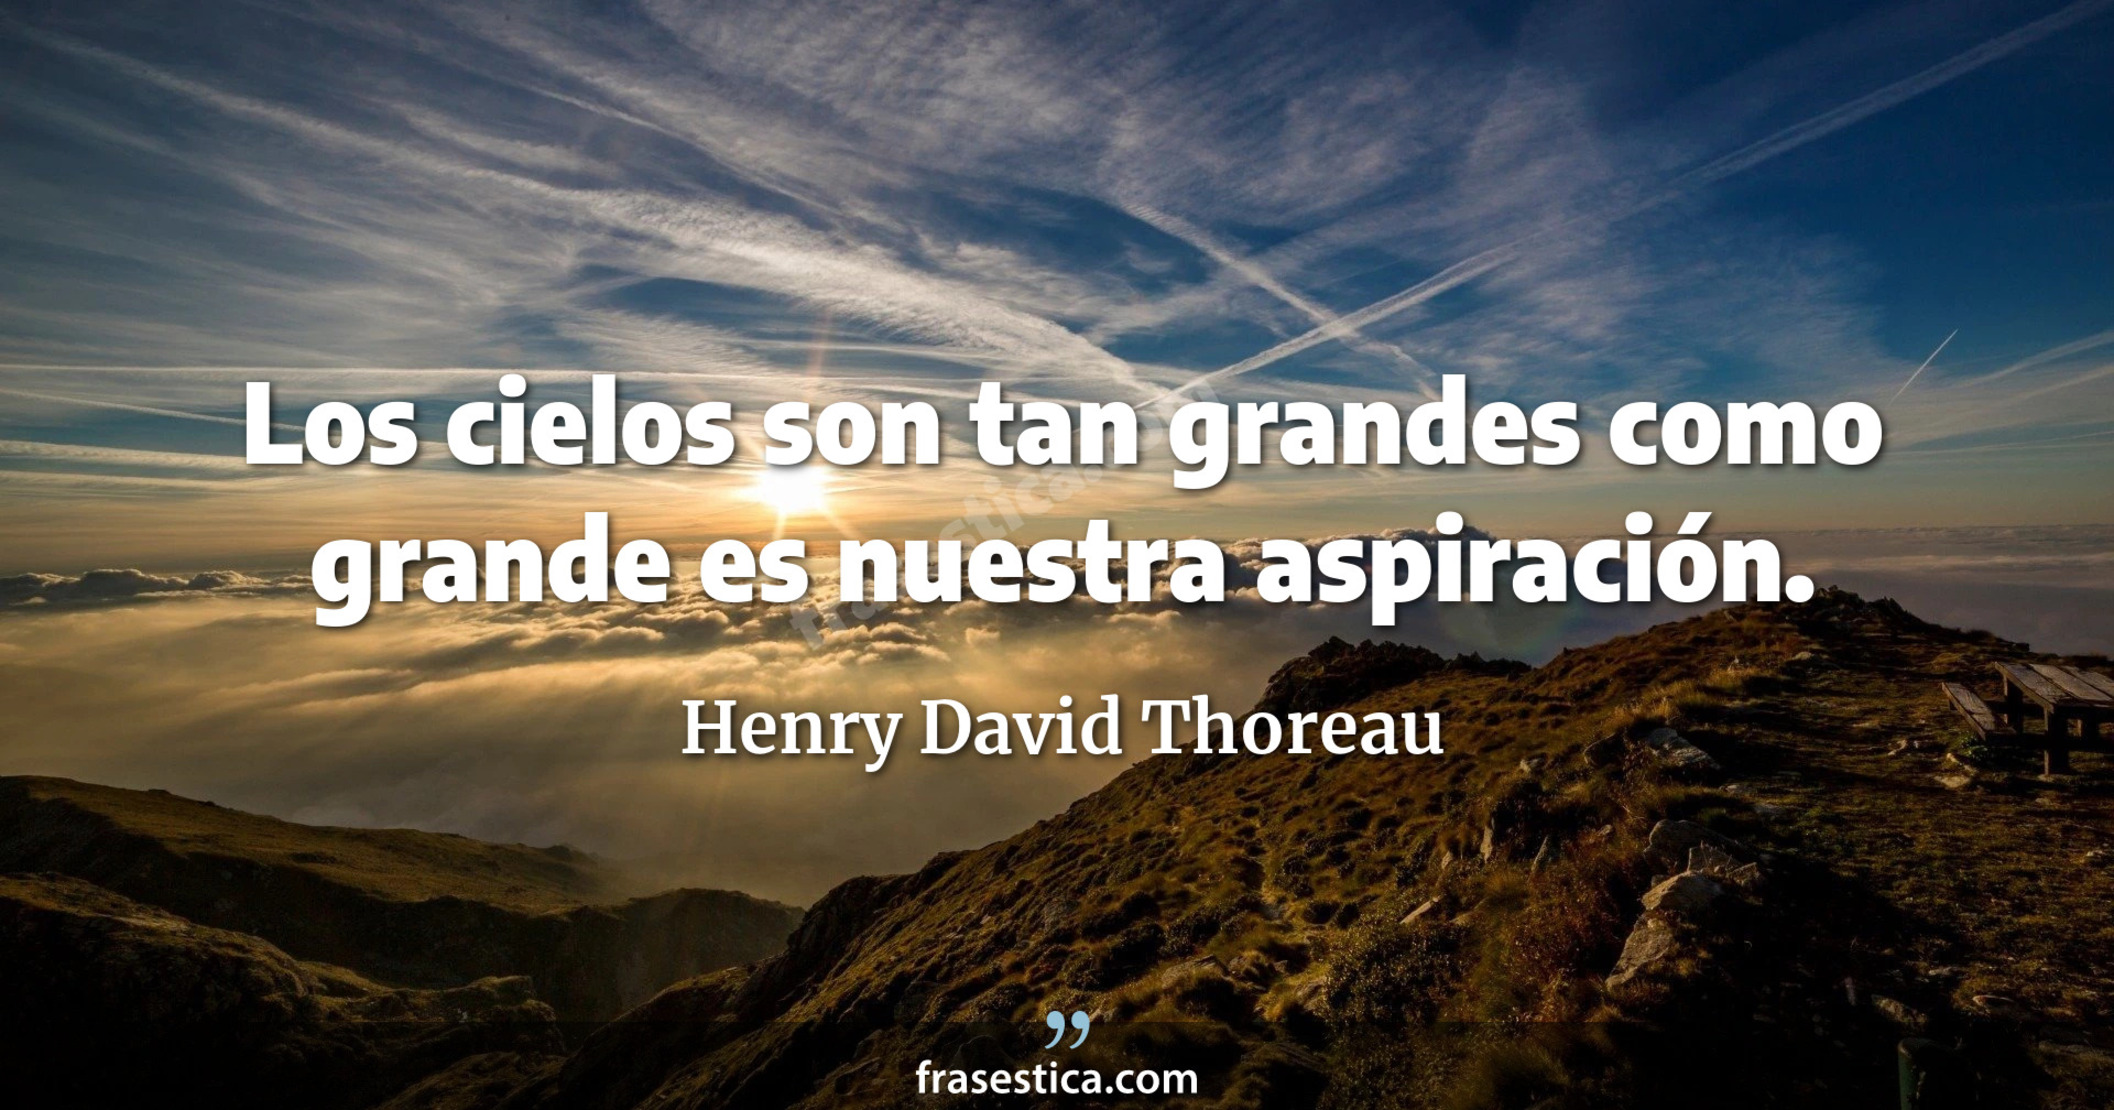 Los cielos son tan grandes como grande es nuestra aspiración. - Henry David Thoreau